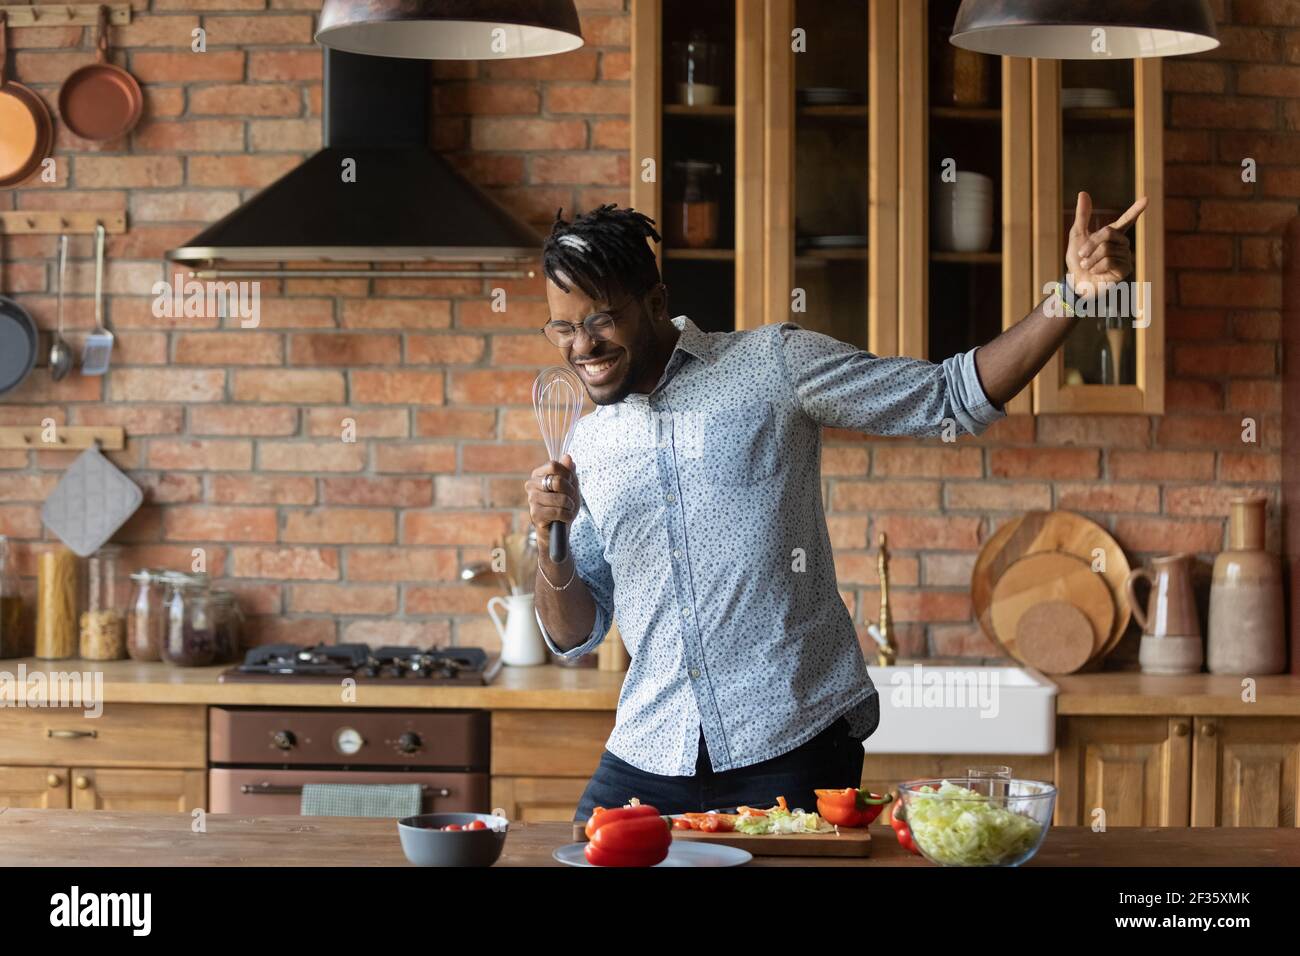 Gioioso uomo afro-americano che canta in cucina usando un microfono improvvisato Foto Stock